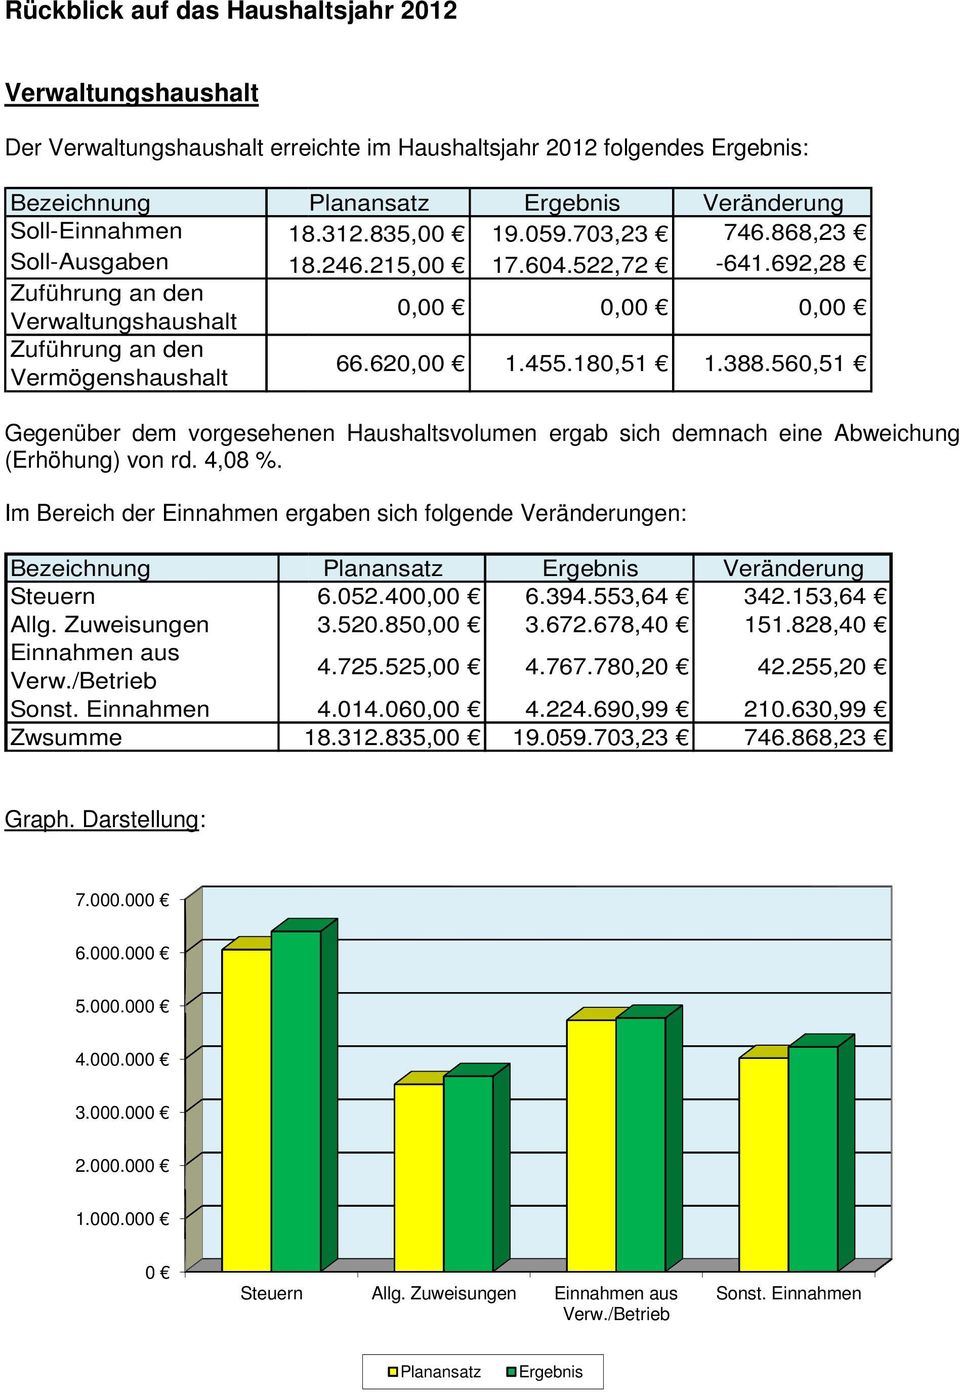 388.560,51 Gegenüber dem vorgesehenen Haushaltsvolumen ergab sich demnach eine Abweichung (Erhöhung) von rd. 4,08 %.